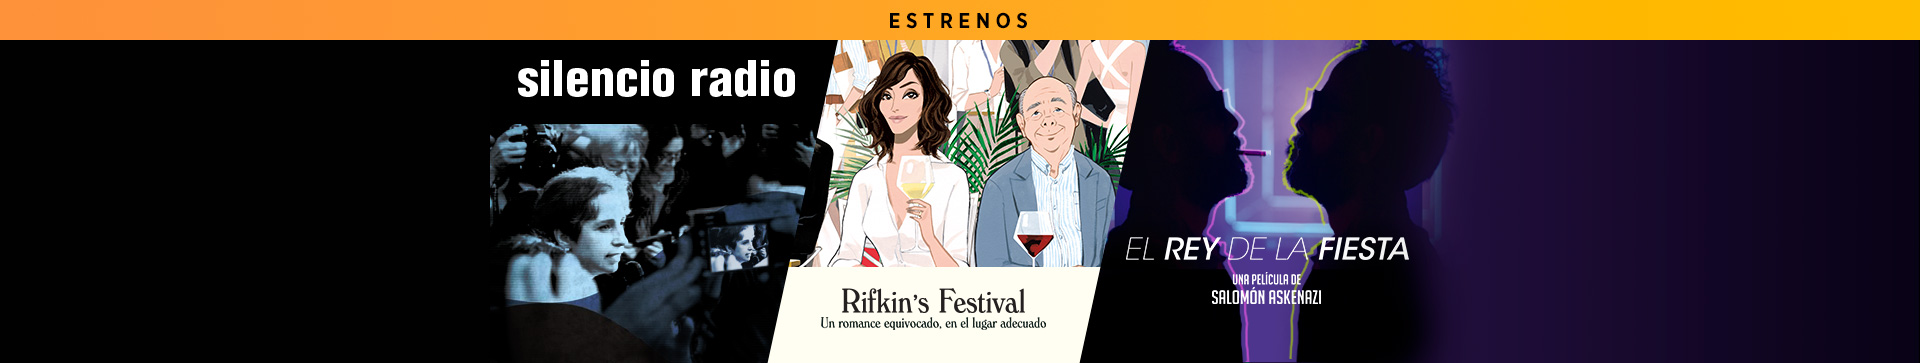 Estrenos Silencio Radio Rifkins Festival El Rey de la Fiesta